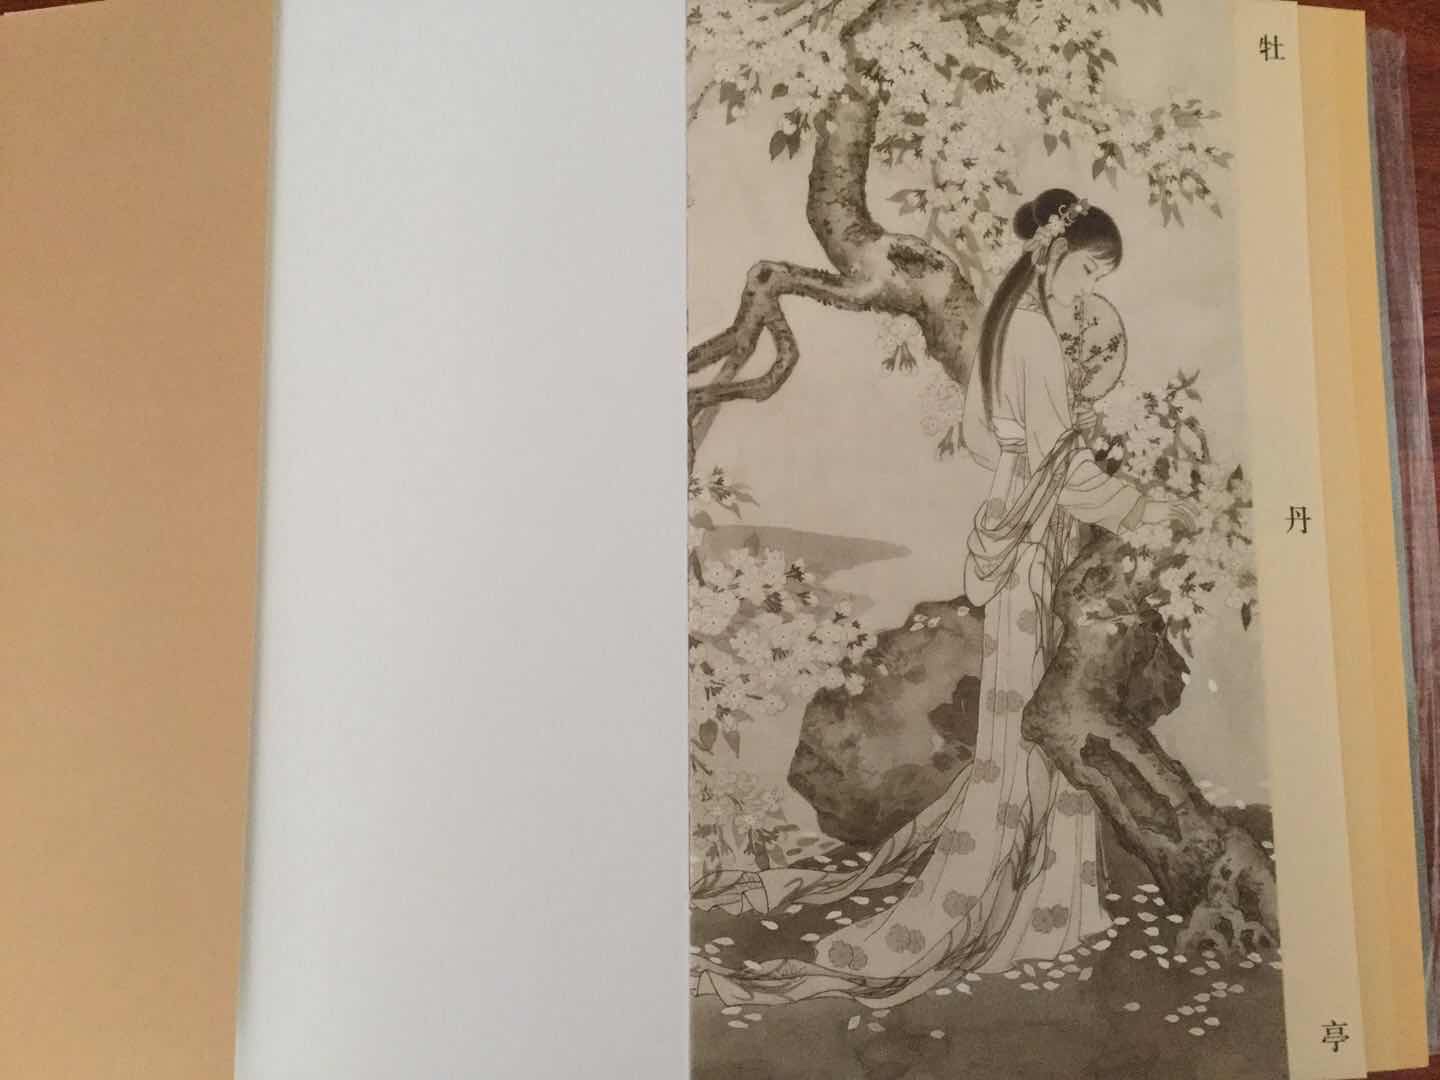 中国古代经典戏曲小说彩绘本。裸脊16开，2018年7月第一版。绘画细腻，制作精美，是一套非常值得收藏的系列丛书。